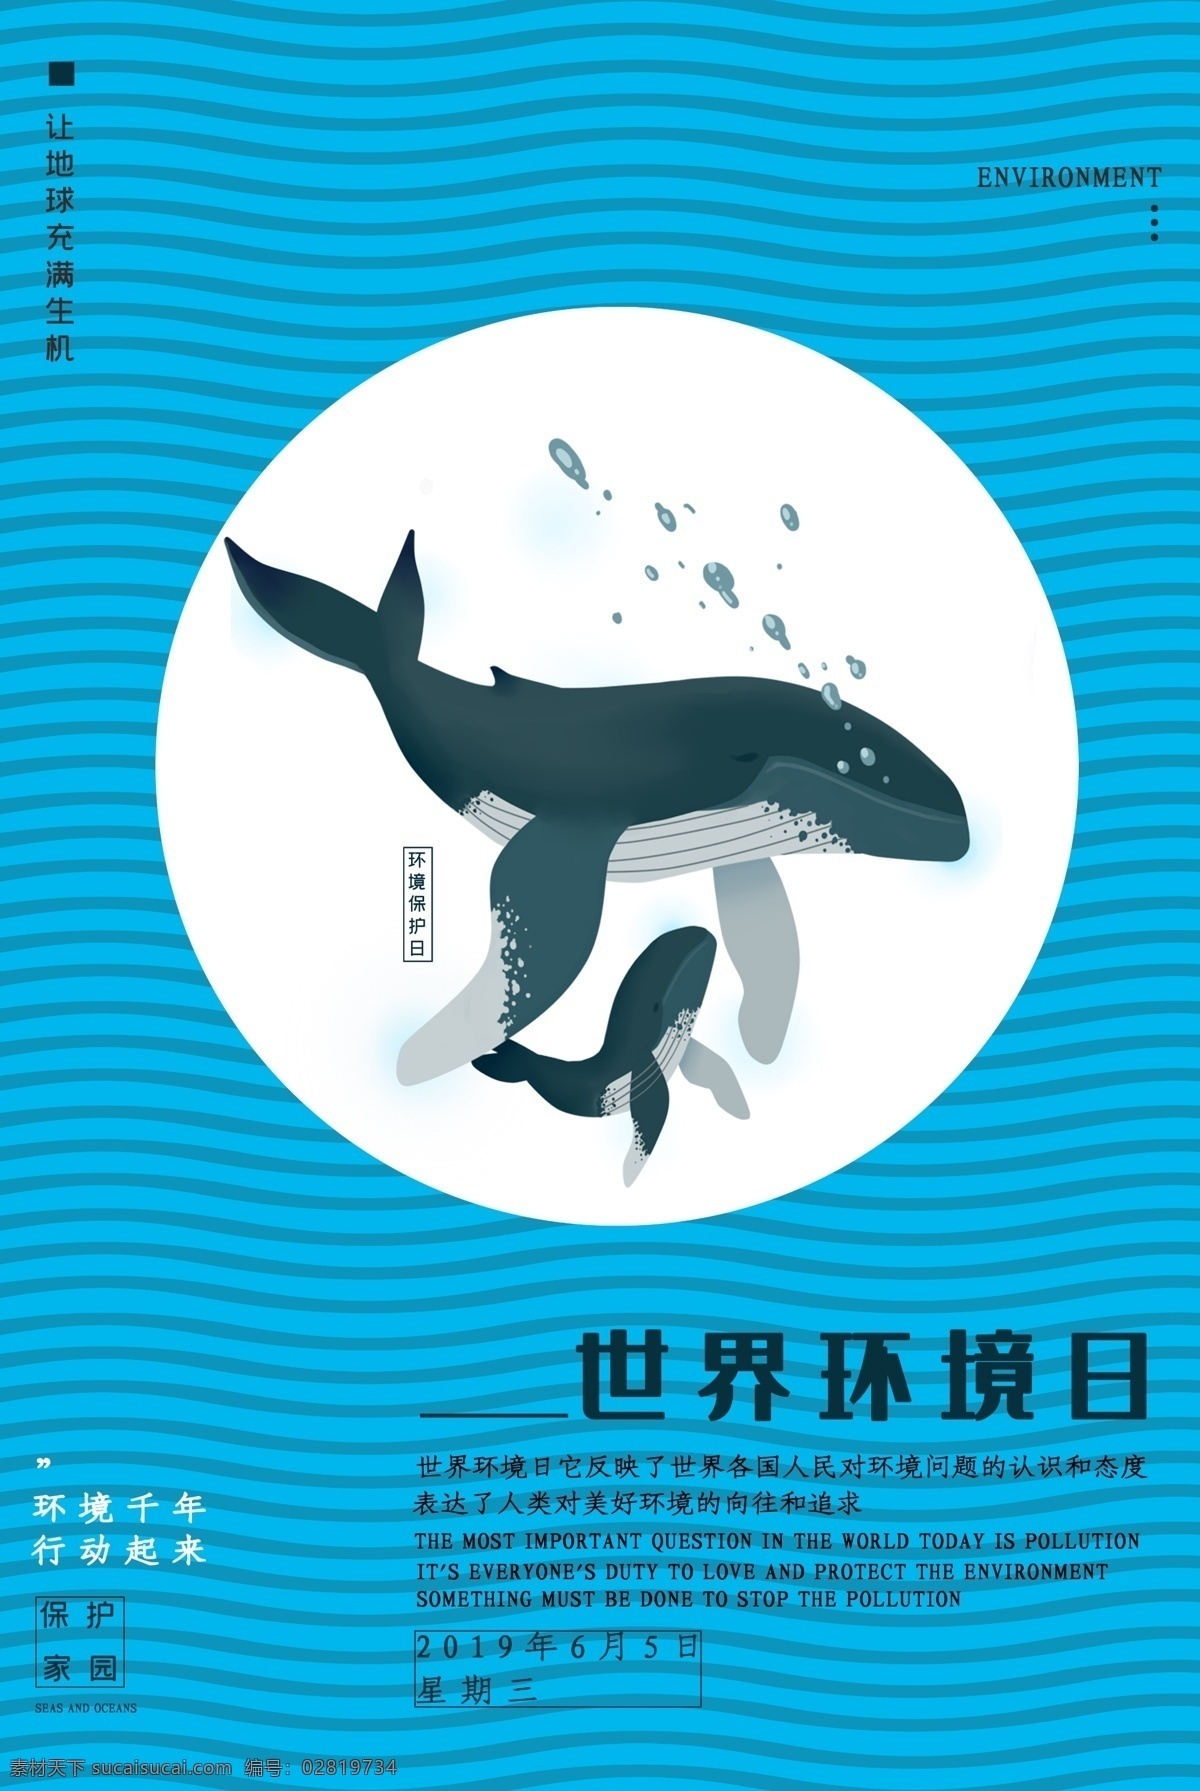 世界环境日 蓝色 环保 大自然 热爱 鱼 元素 保护环境 海报 宣传单